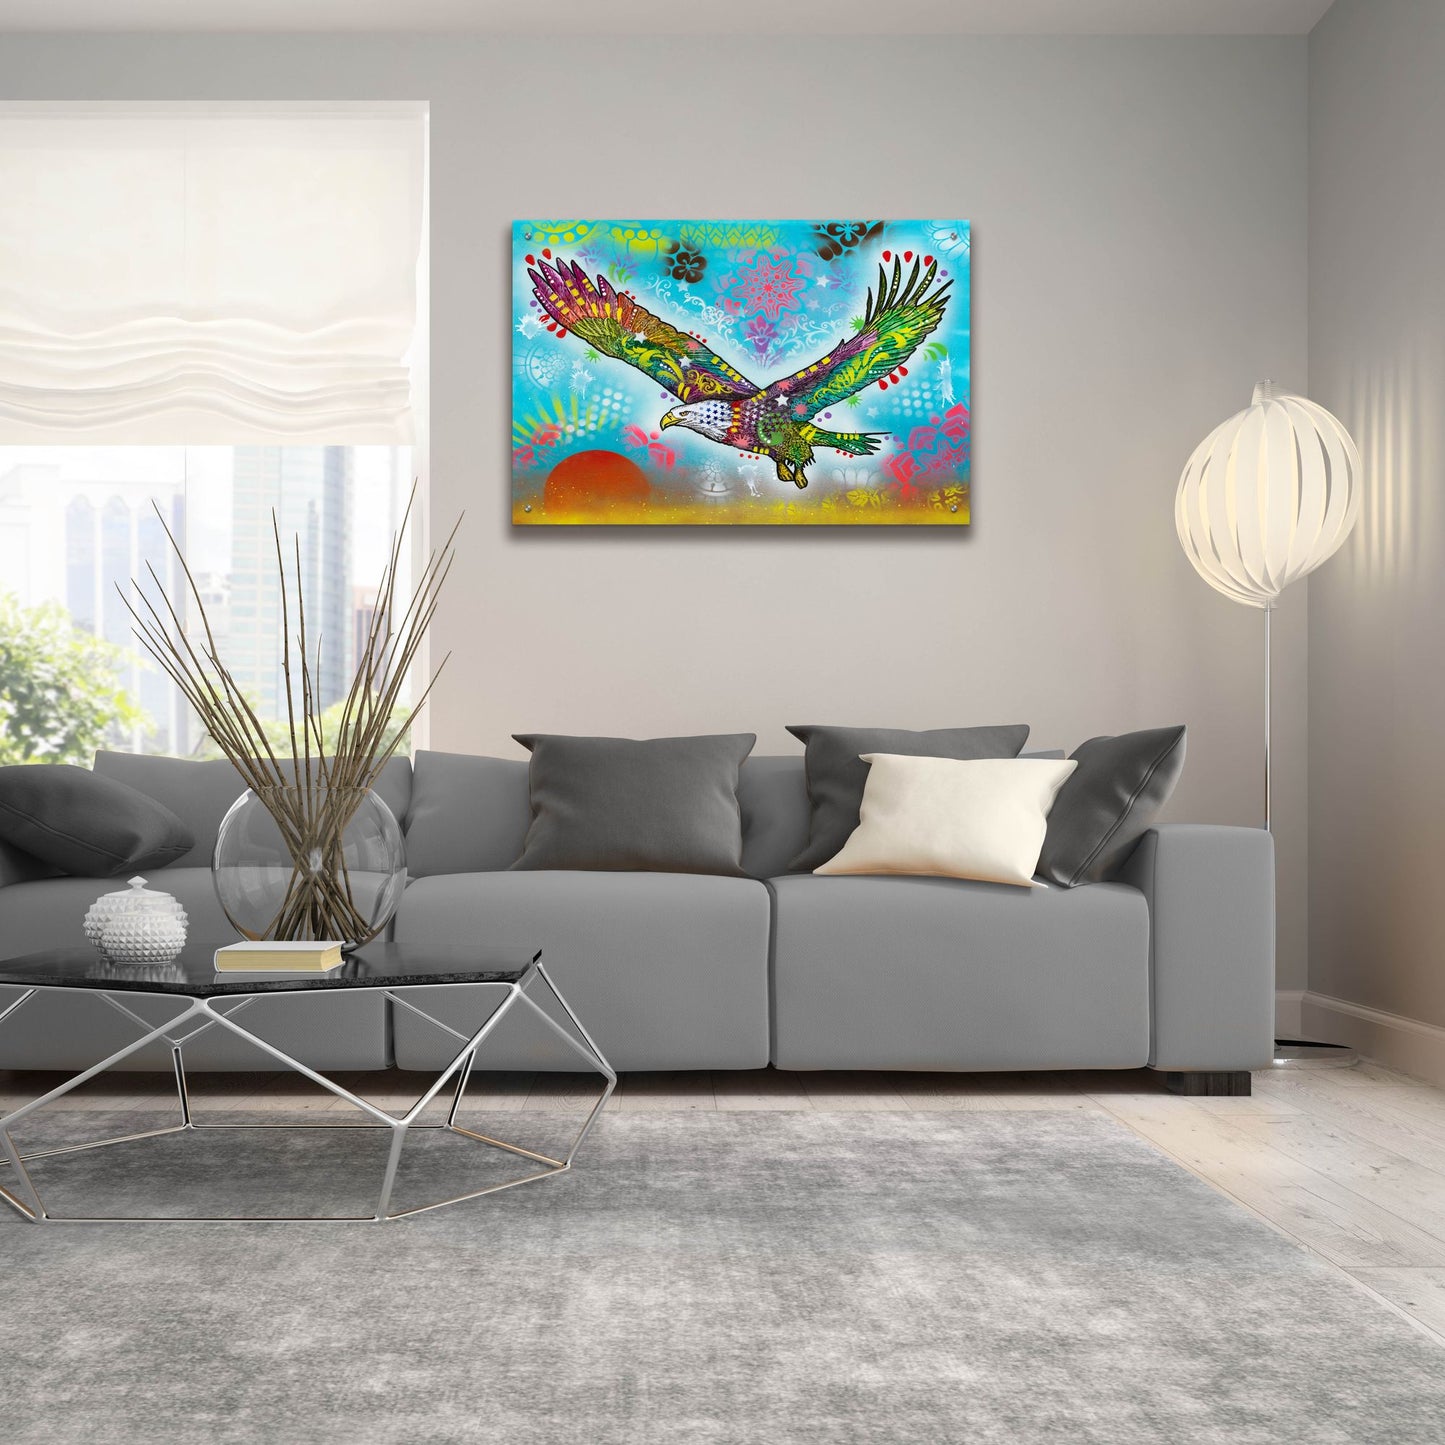 Epic Art 'In Flight' by Dean Russo, Acrylic Glass Wall Art,36x24